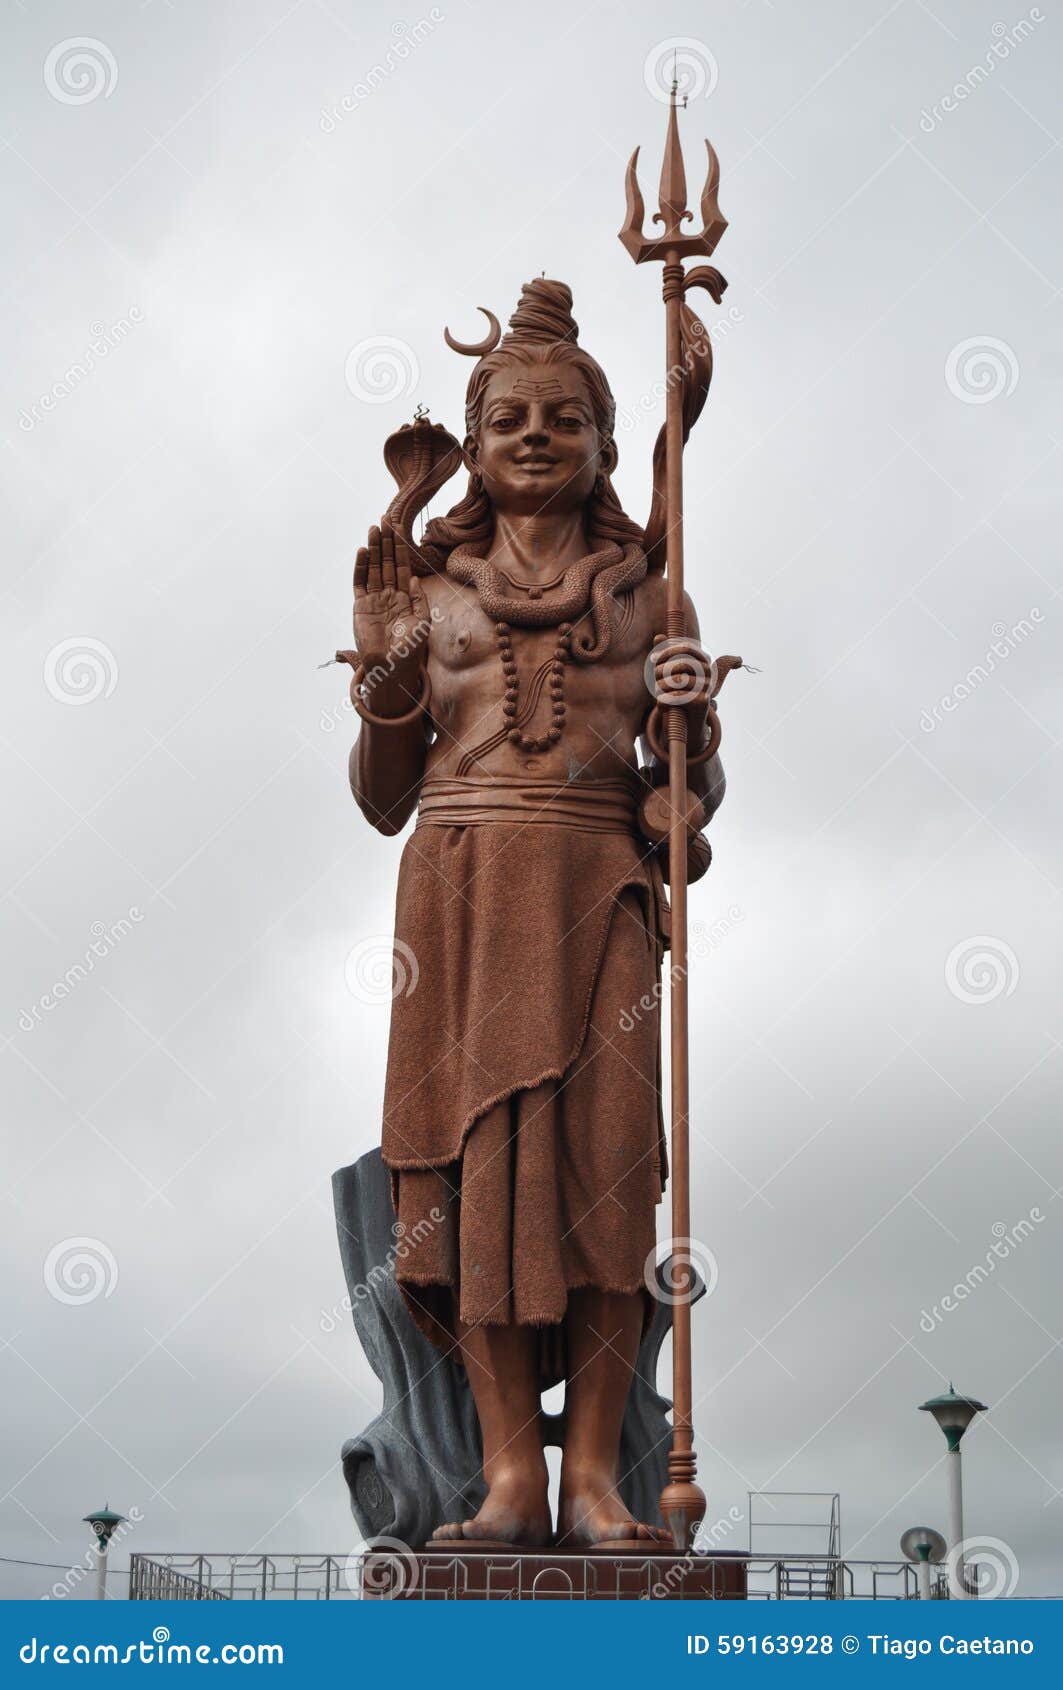 shiva statue at grand bassin, mauritius